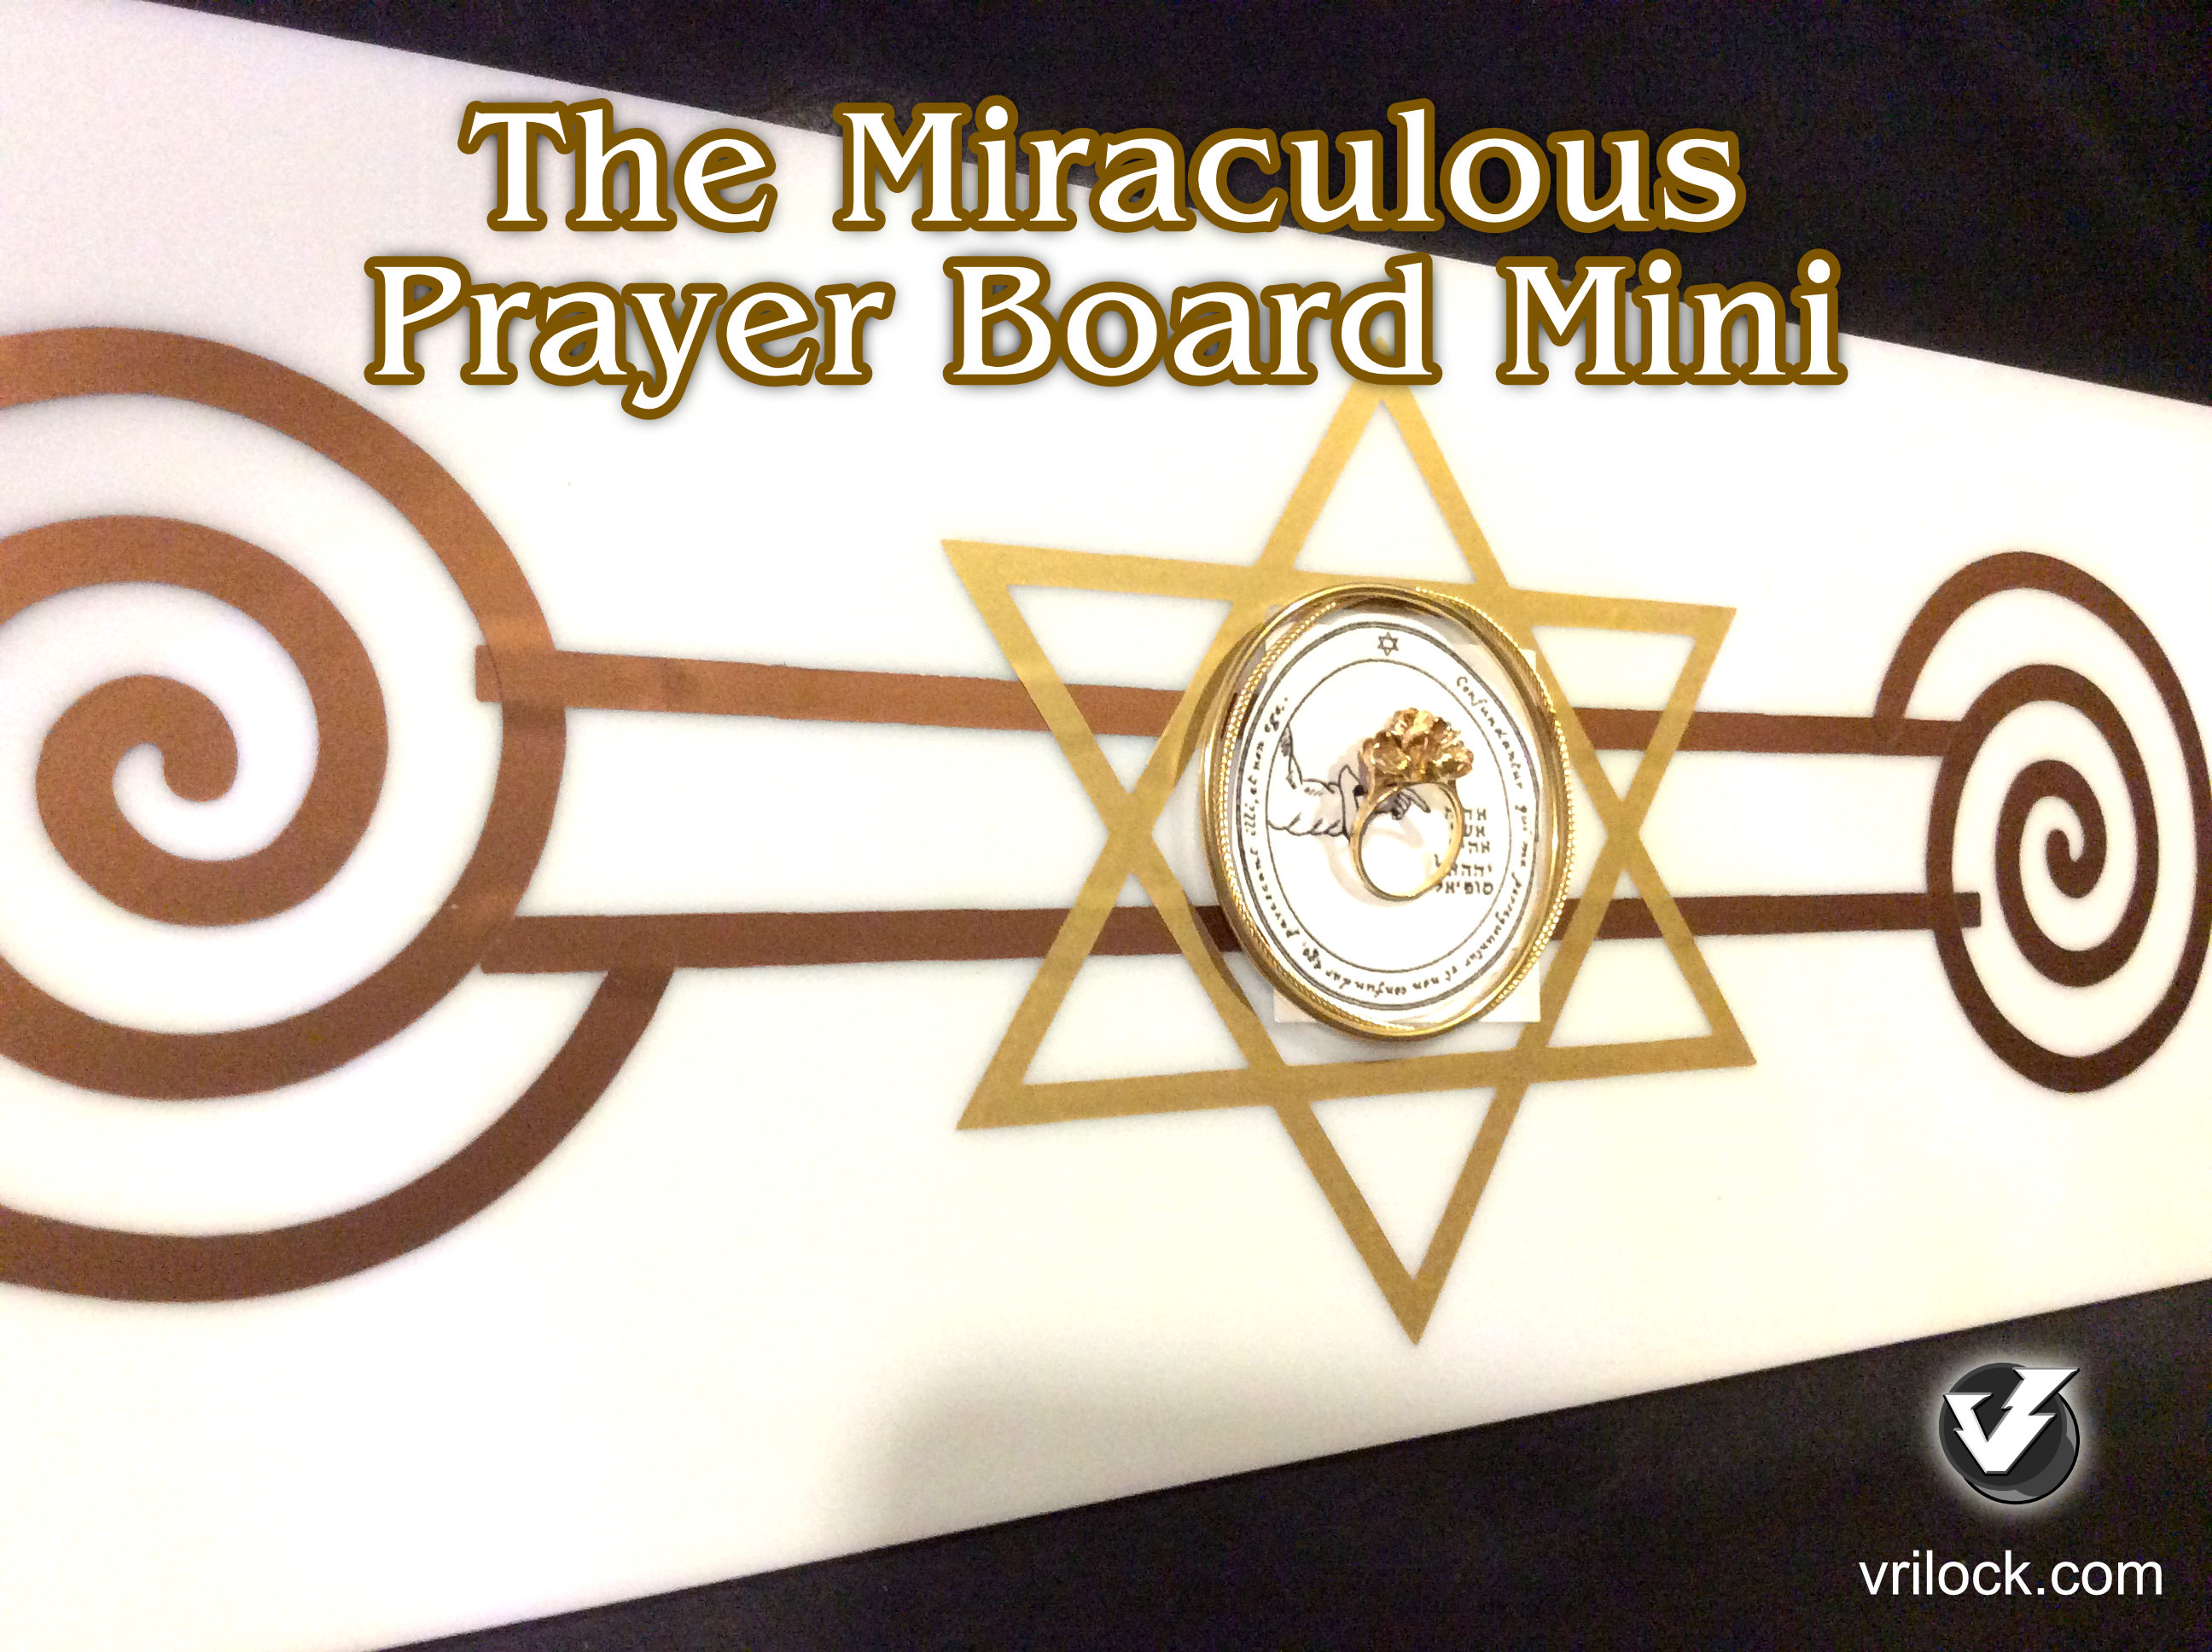 The Miraculous Prayer Board Mini